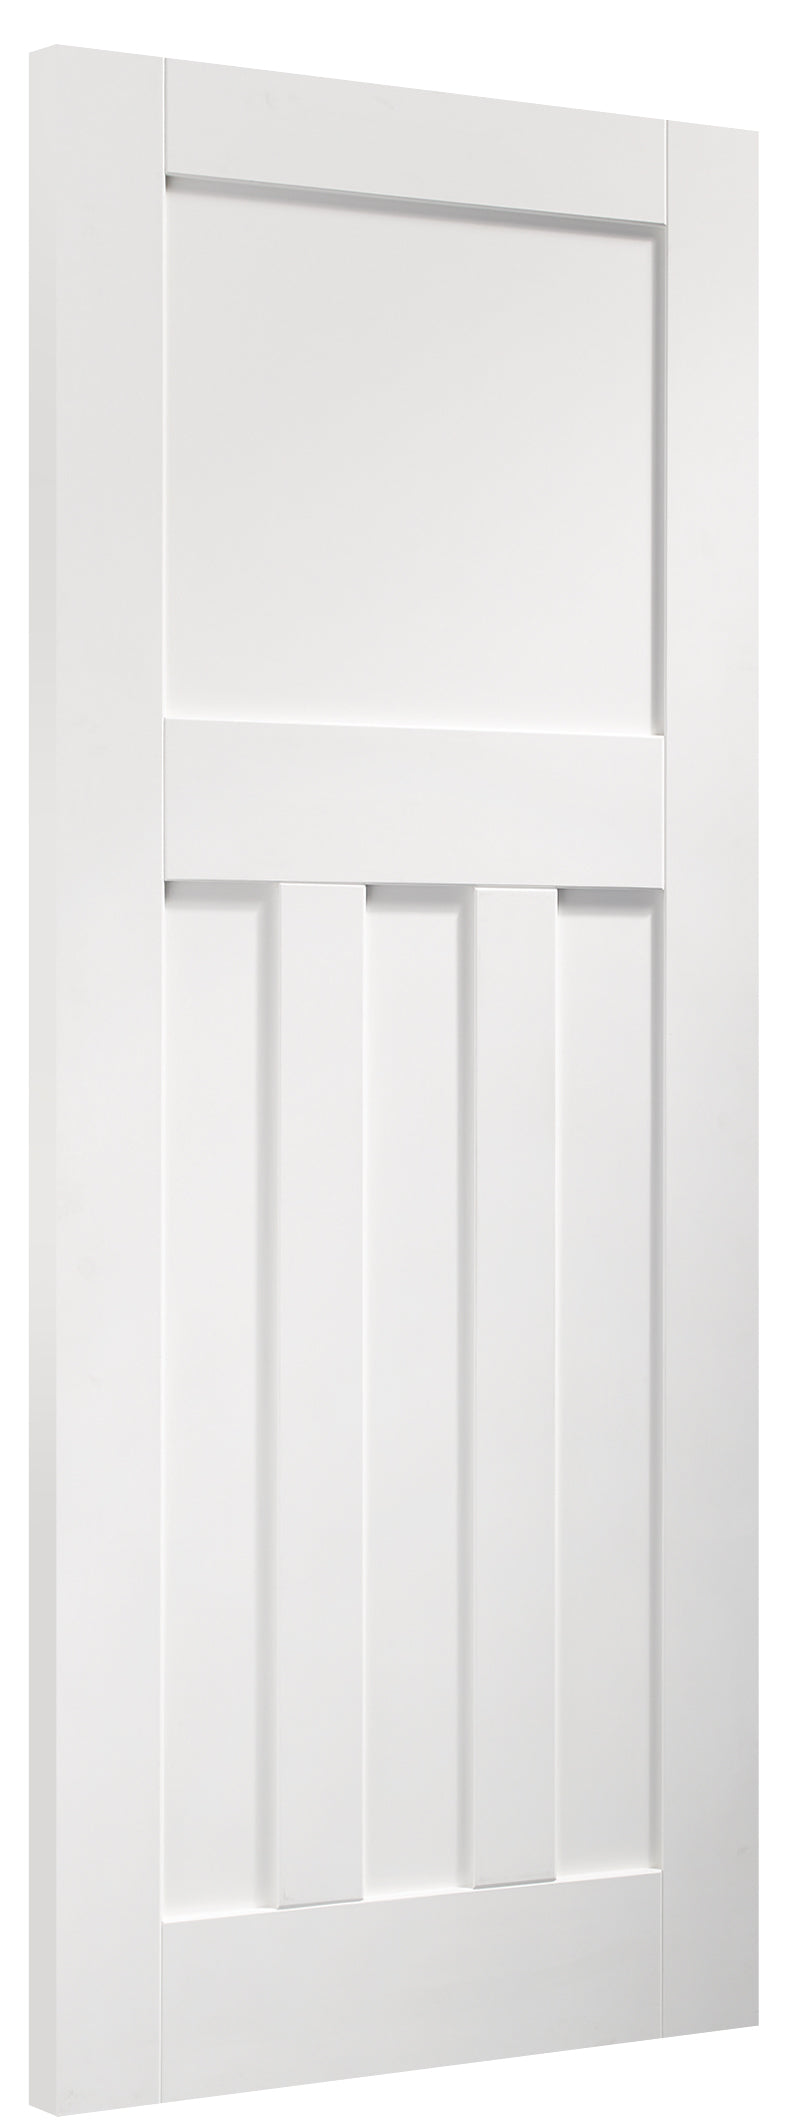 Internal White Primed DX Door Fire Door